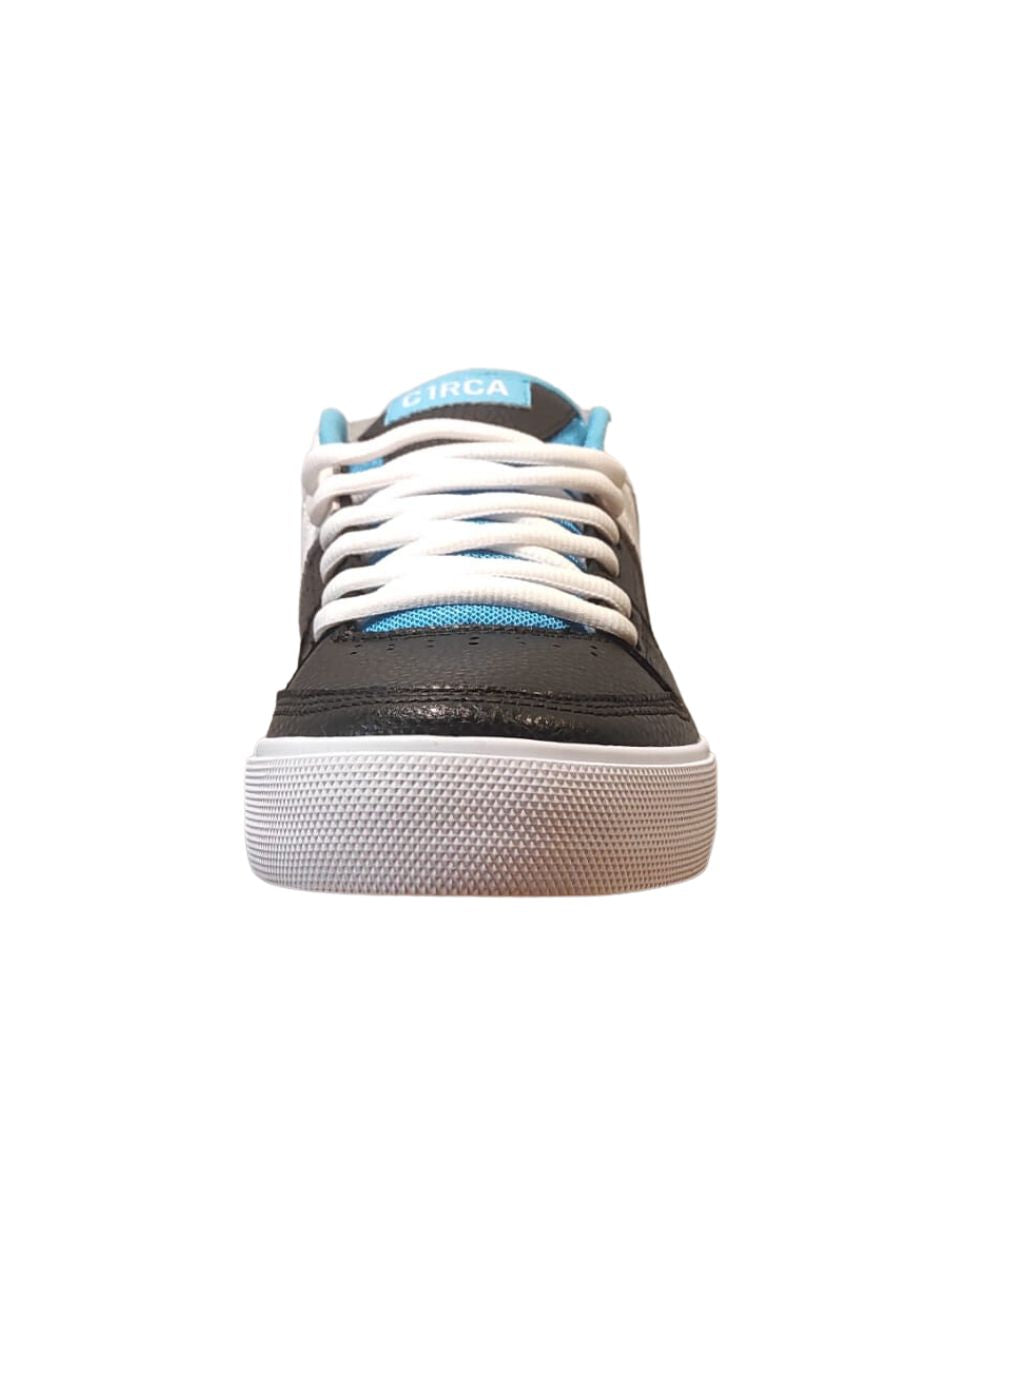 Circa Widowmaker Skate-Schuhe in Schwarz/Bachelor Button/Weiß | Meistverkaufte Produkte | Neue Produkte | Neueste Produkte | Sammlung_Zalando | Schuhwerk | Turnschuhe | surfdevils.com